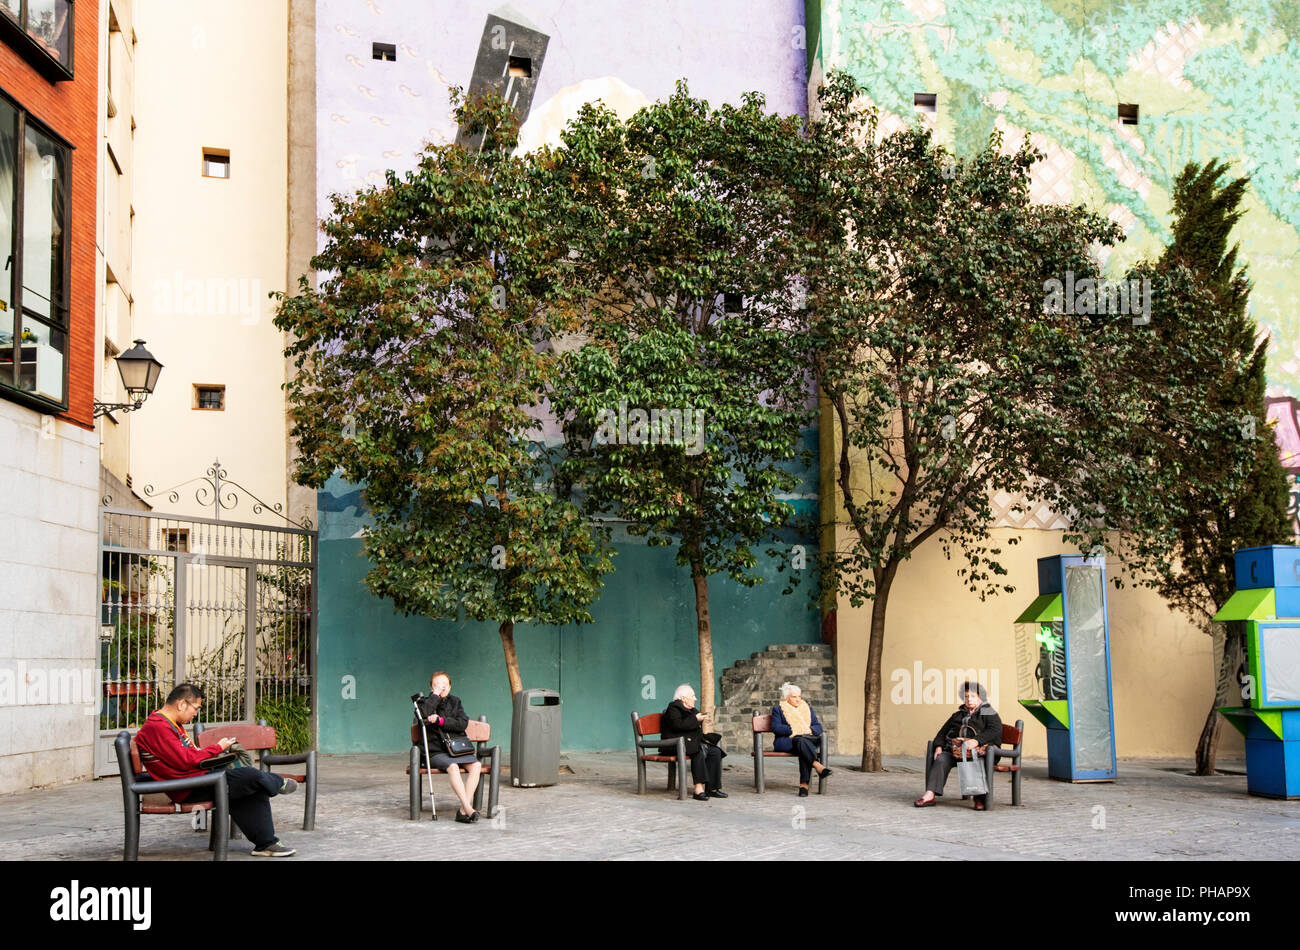 Street scene in Madrid, Spain Stock Photo